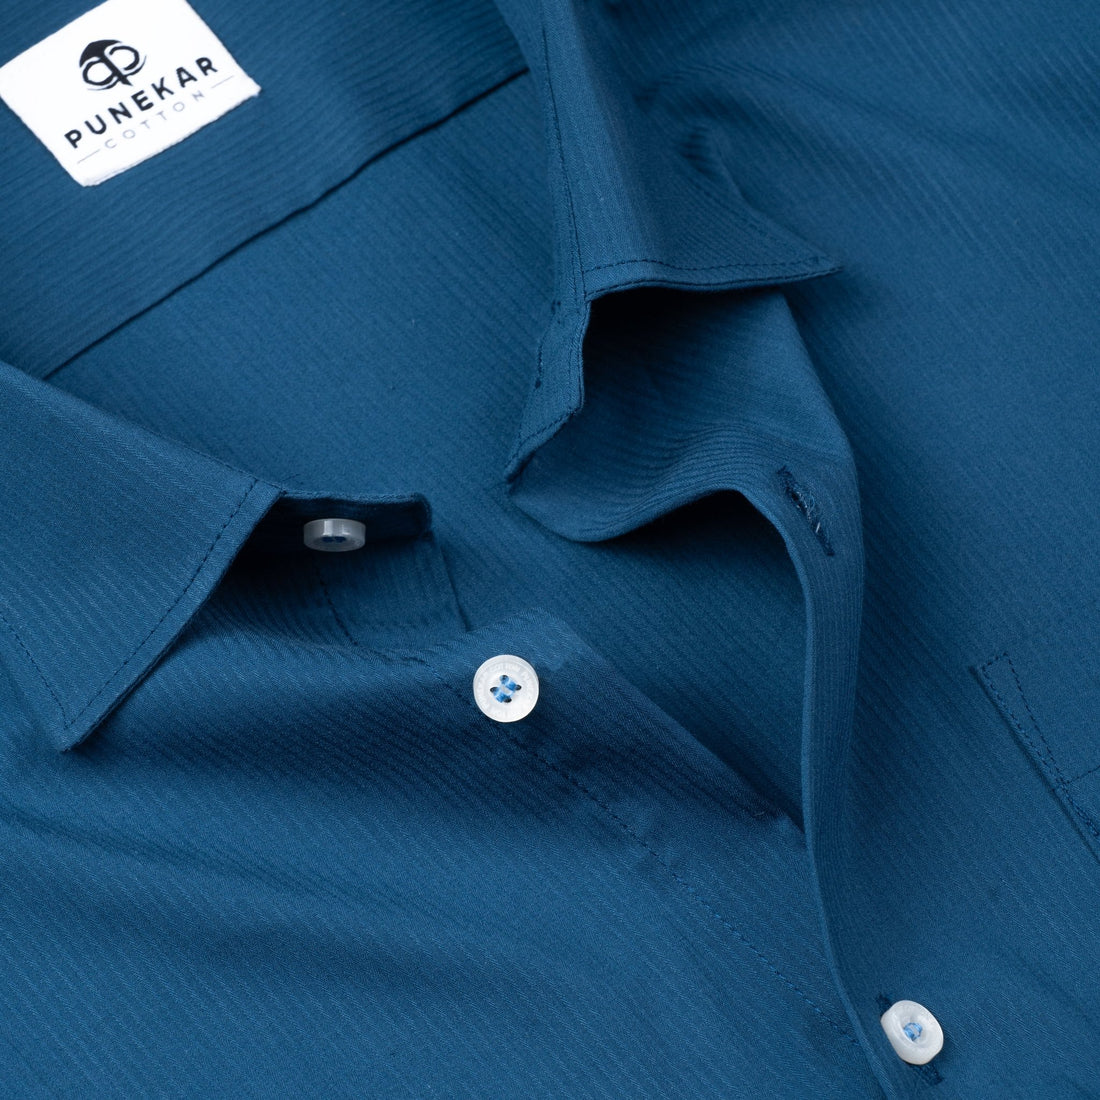 Royal Blue Color Lining Texture Lycra Cotton Shirt For Men - Punekar Cotton